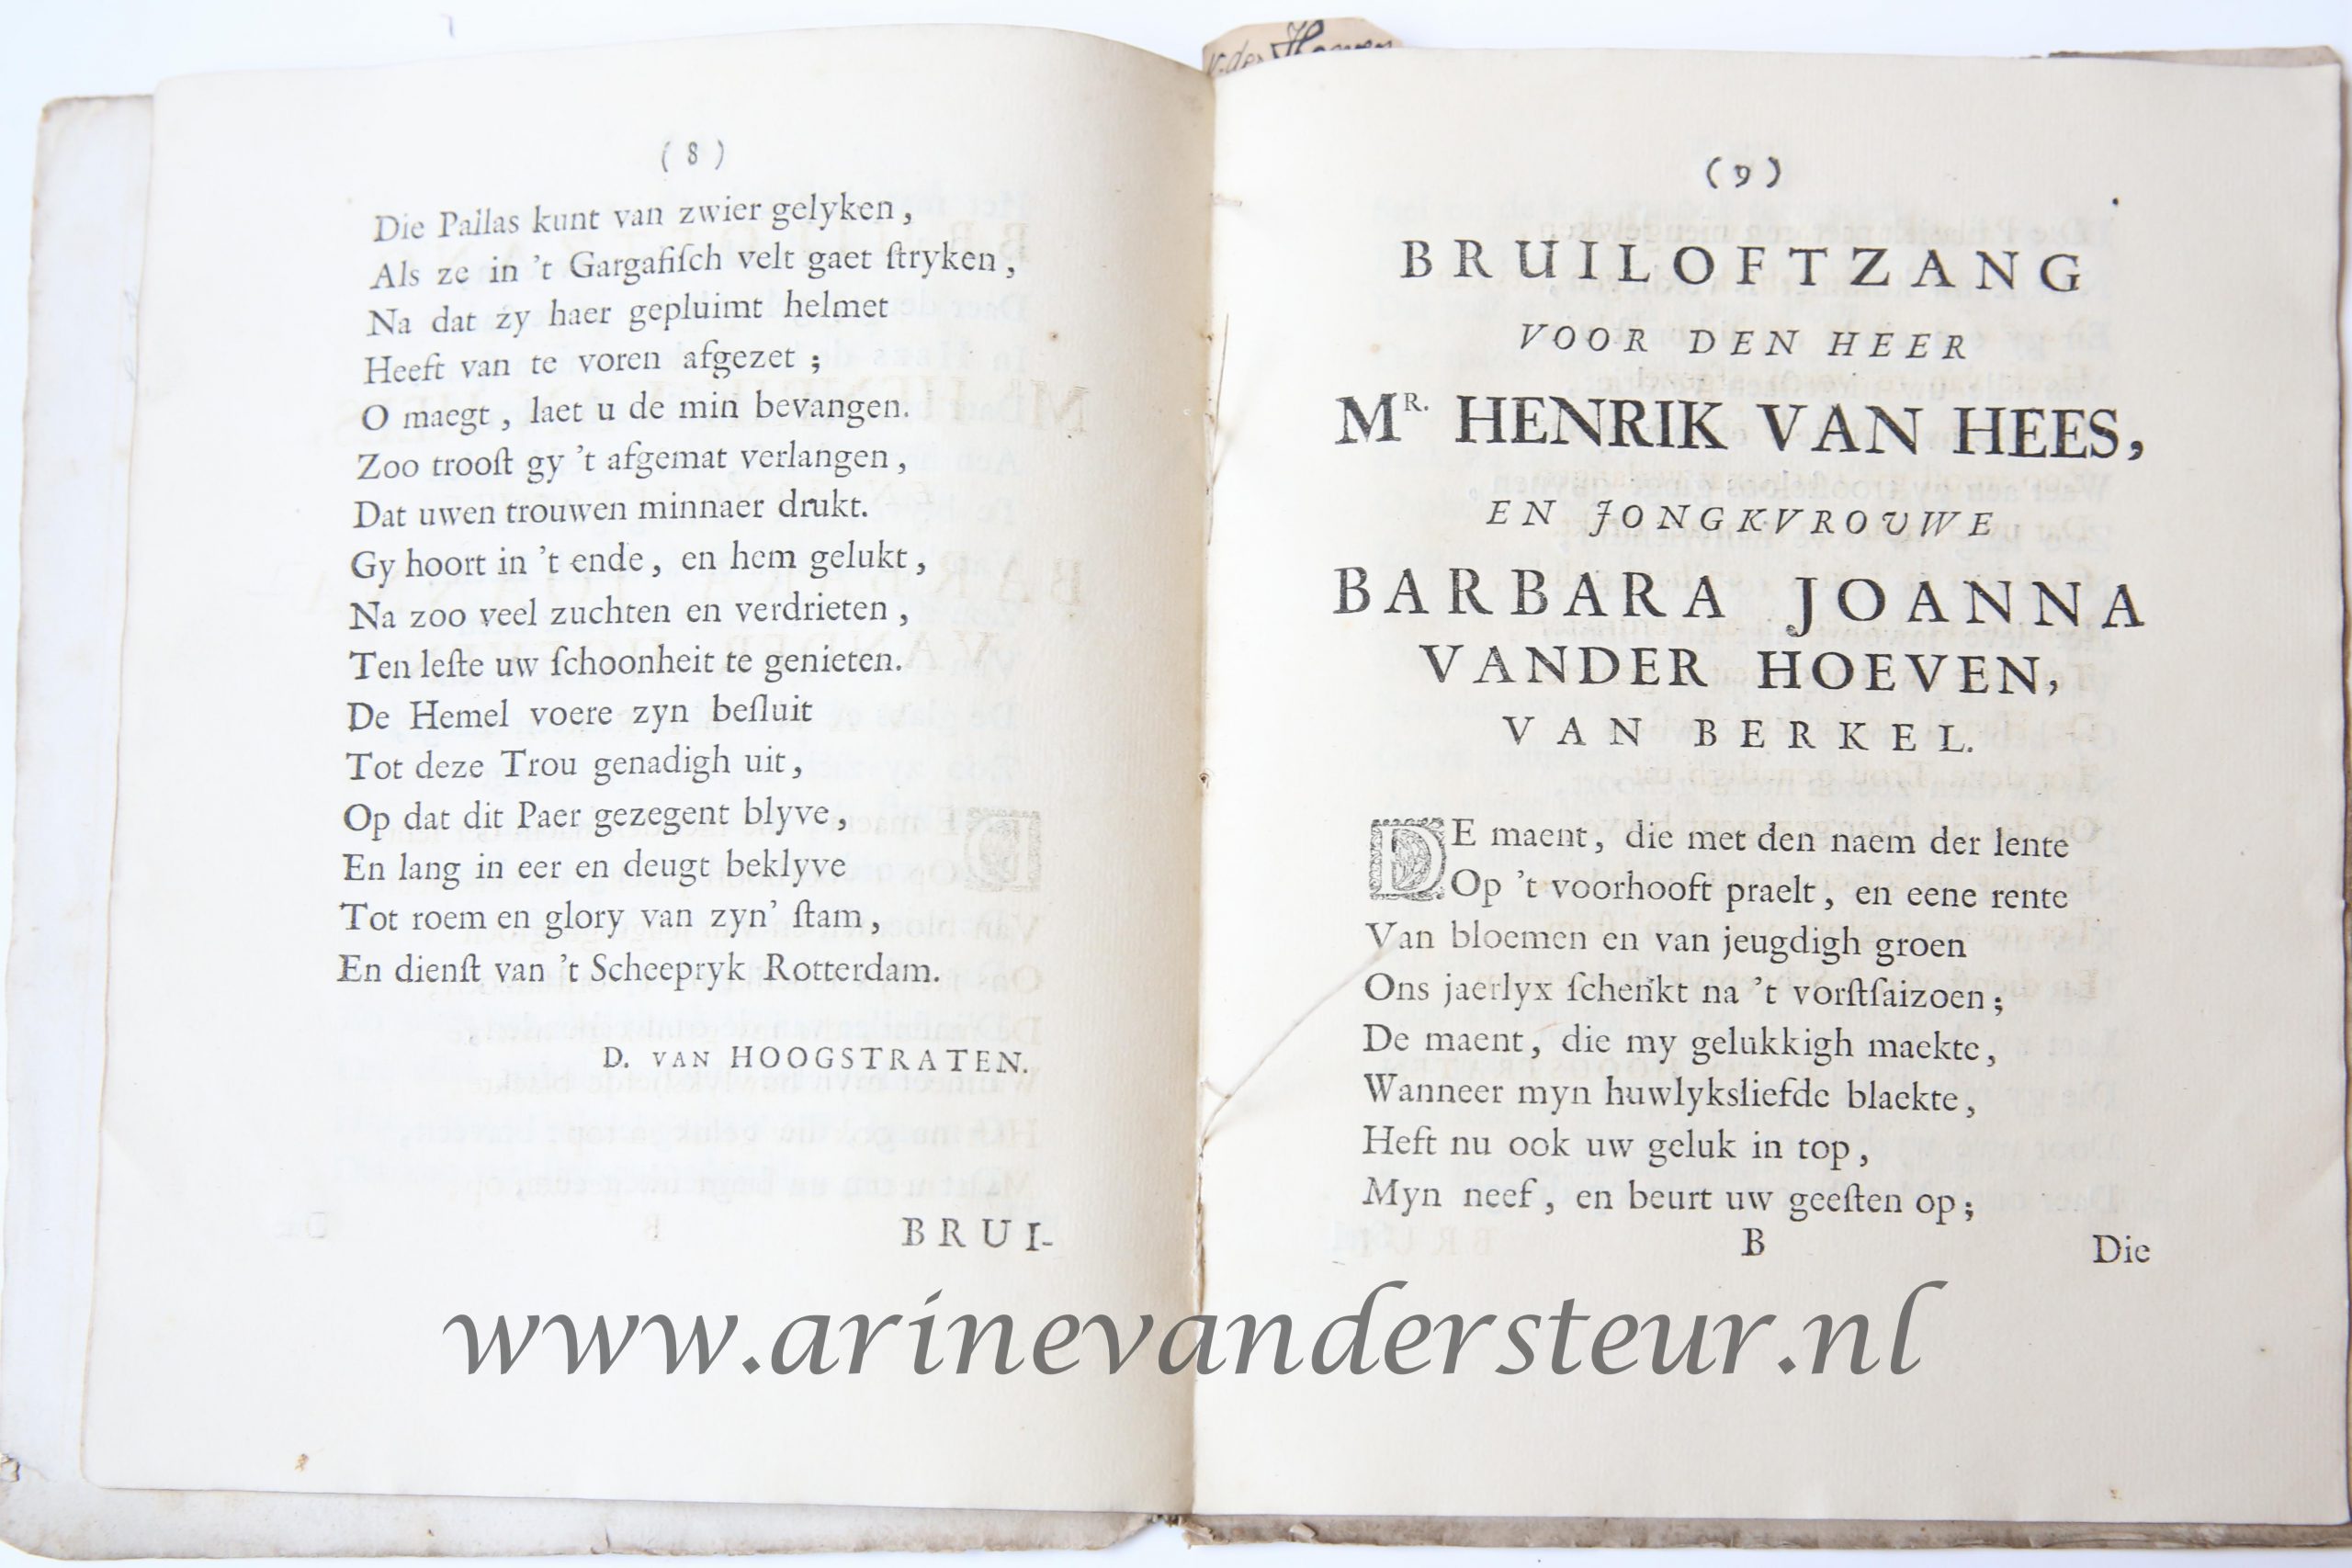  - Bruiloftzangen voor Mr. Henrik Van hees, schepen der stadt Rotterdam en Barbara Joanna Van der hoeven van berkel. Rotterdam, Joannes Hofhout, 1716. 4: 15 p.